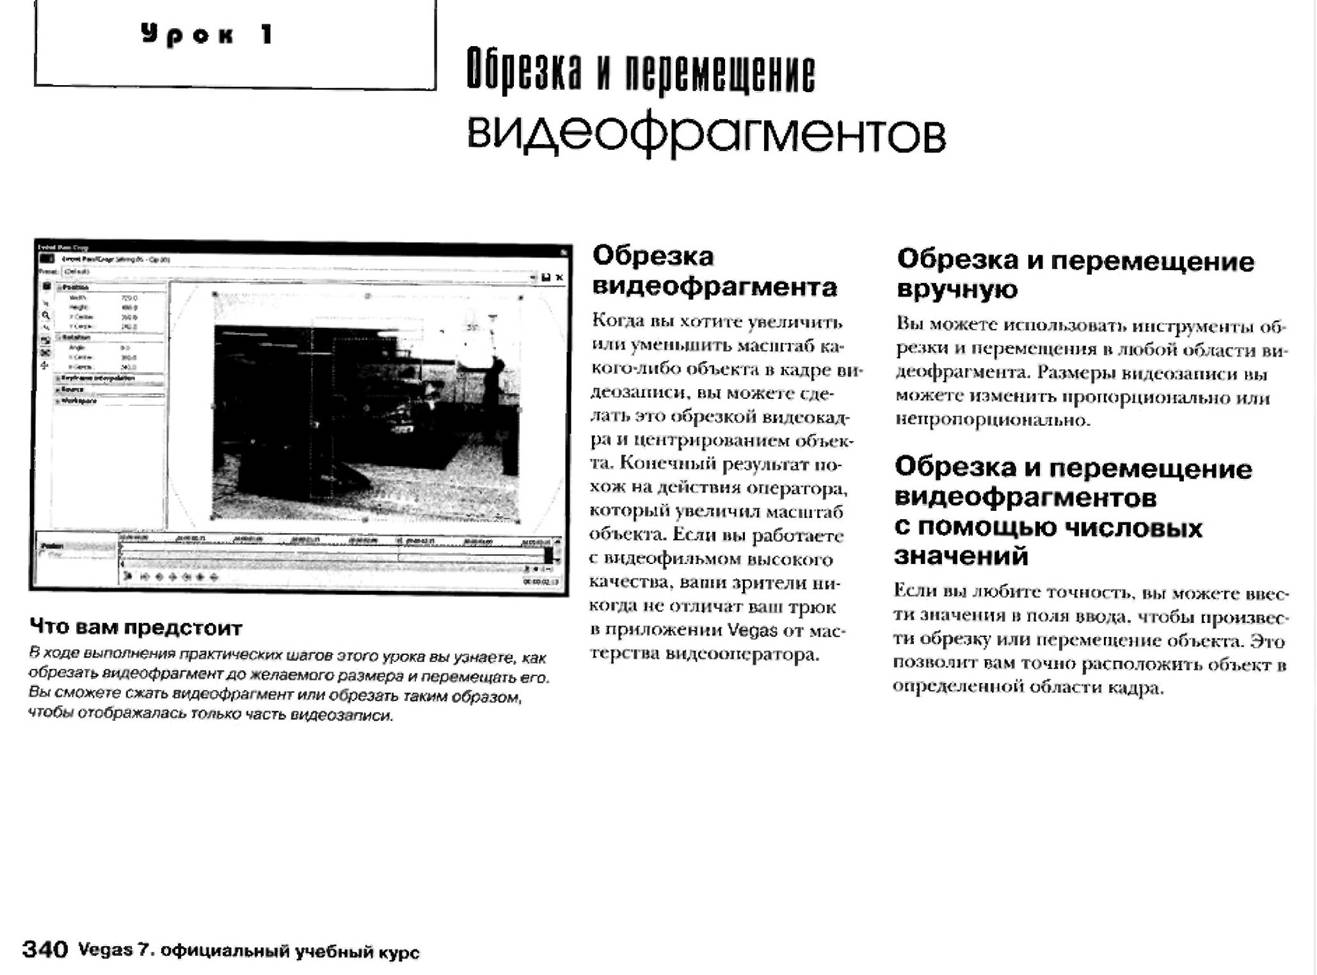 http://redaktori-uroki.3dn.ru/_ph/12/879056551.jpg